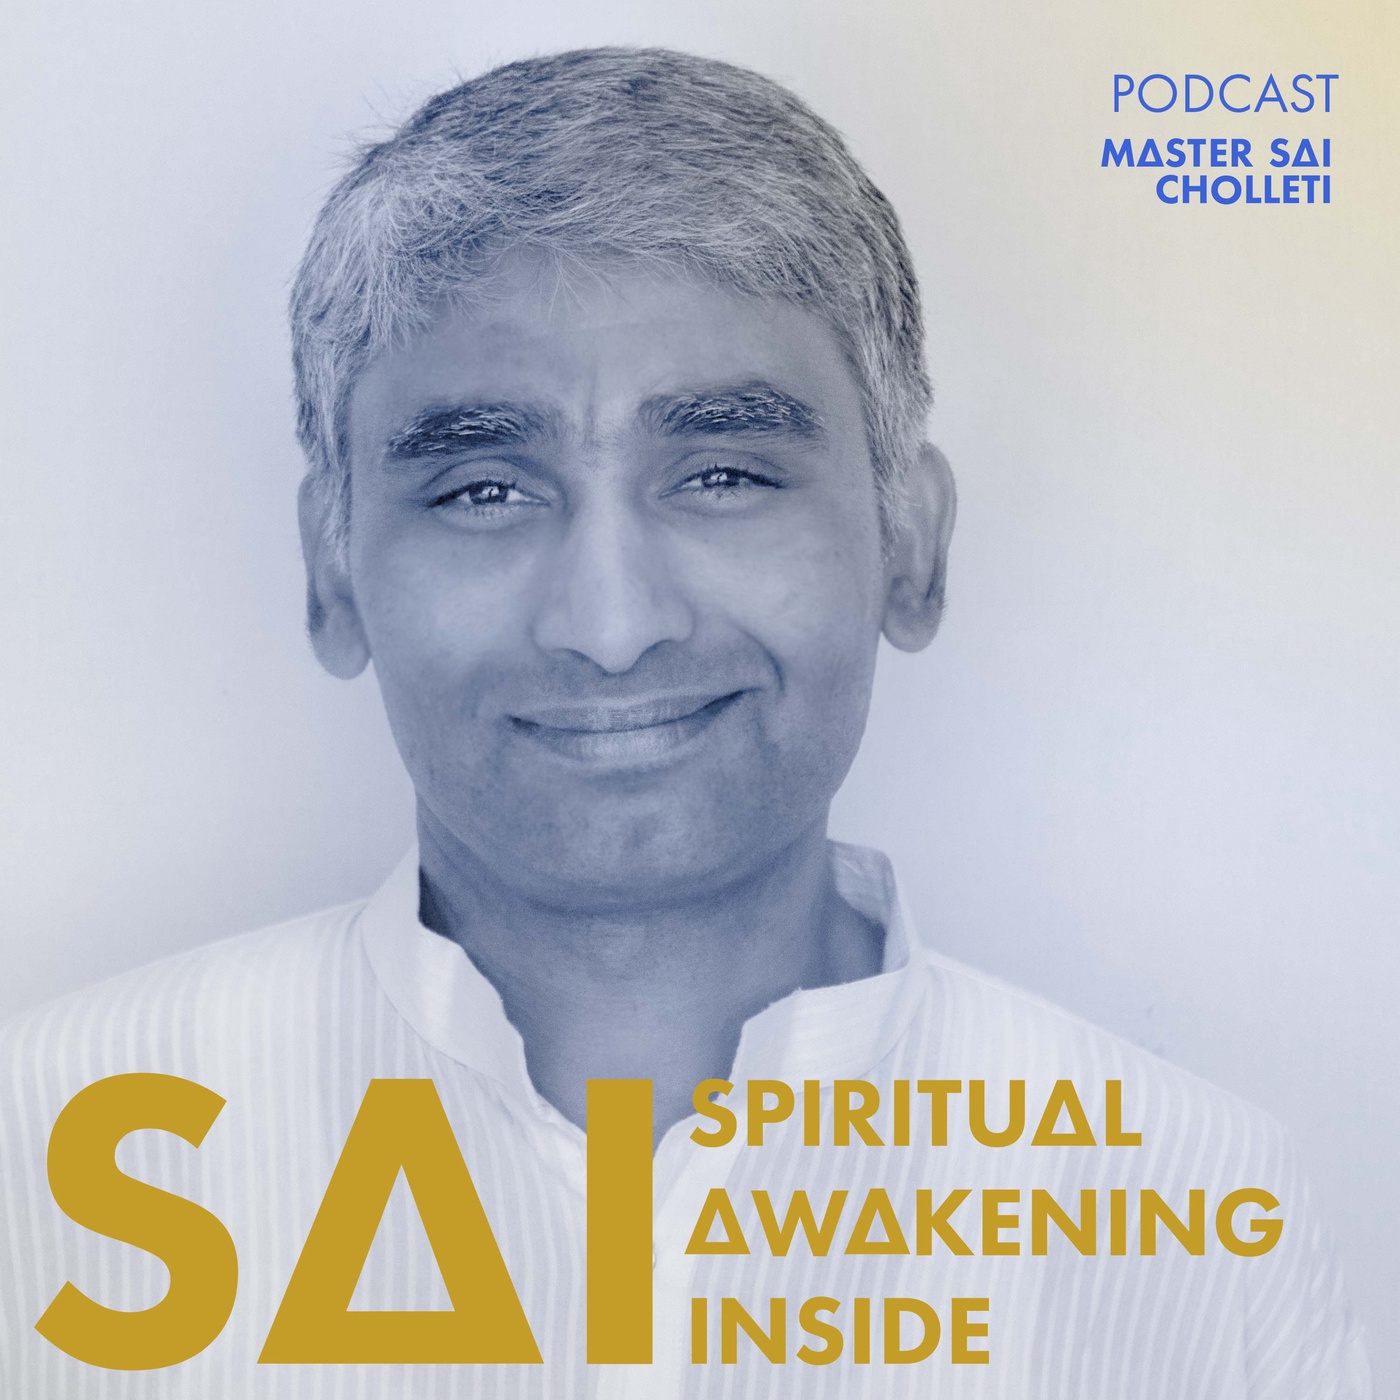 SAI - Spiritual Awakening Inside